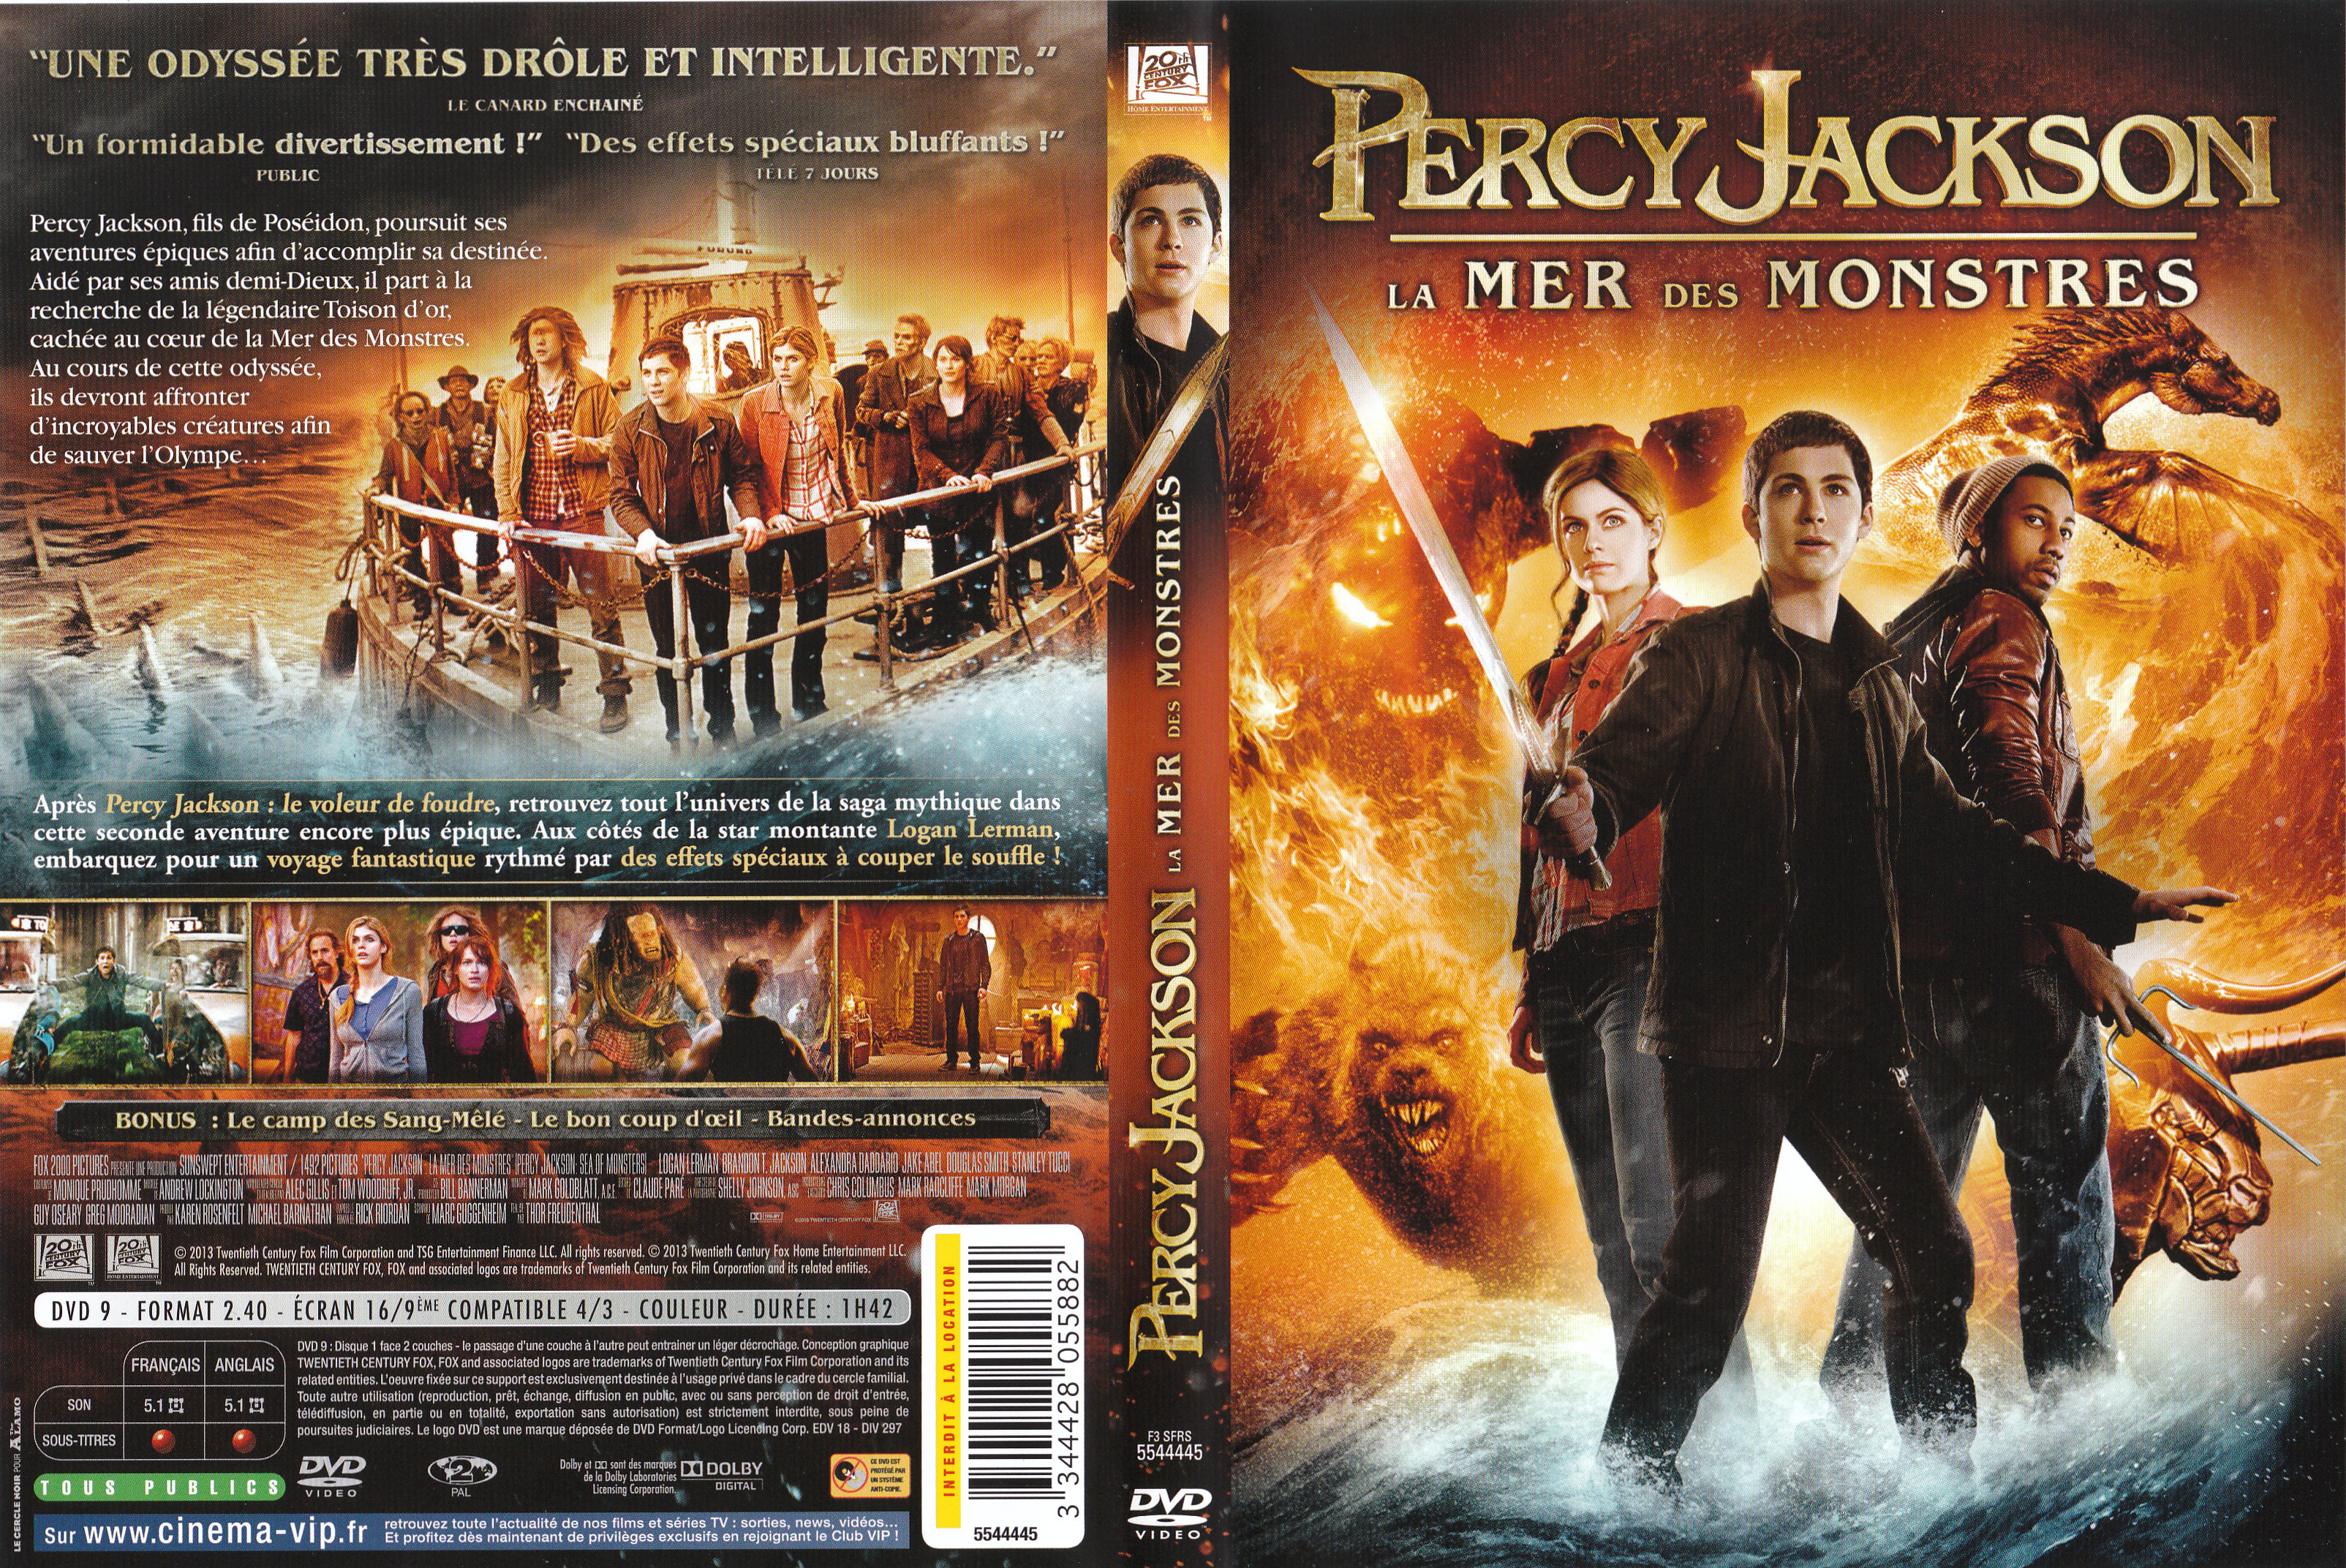 Jaquette DVD Percy Jackson La mer des monstres